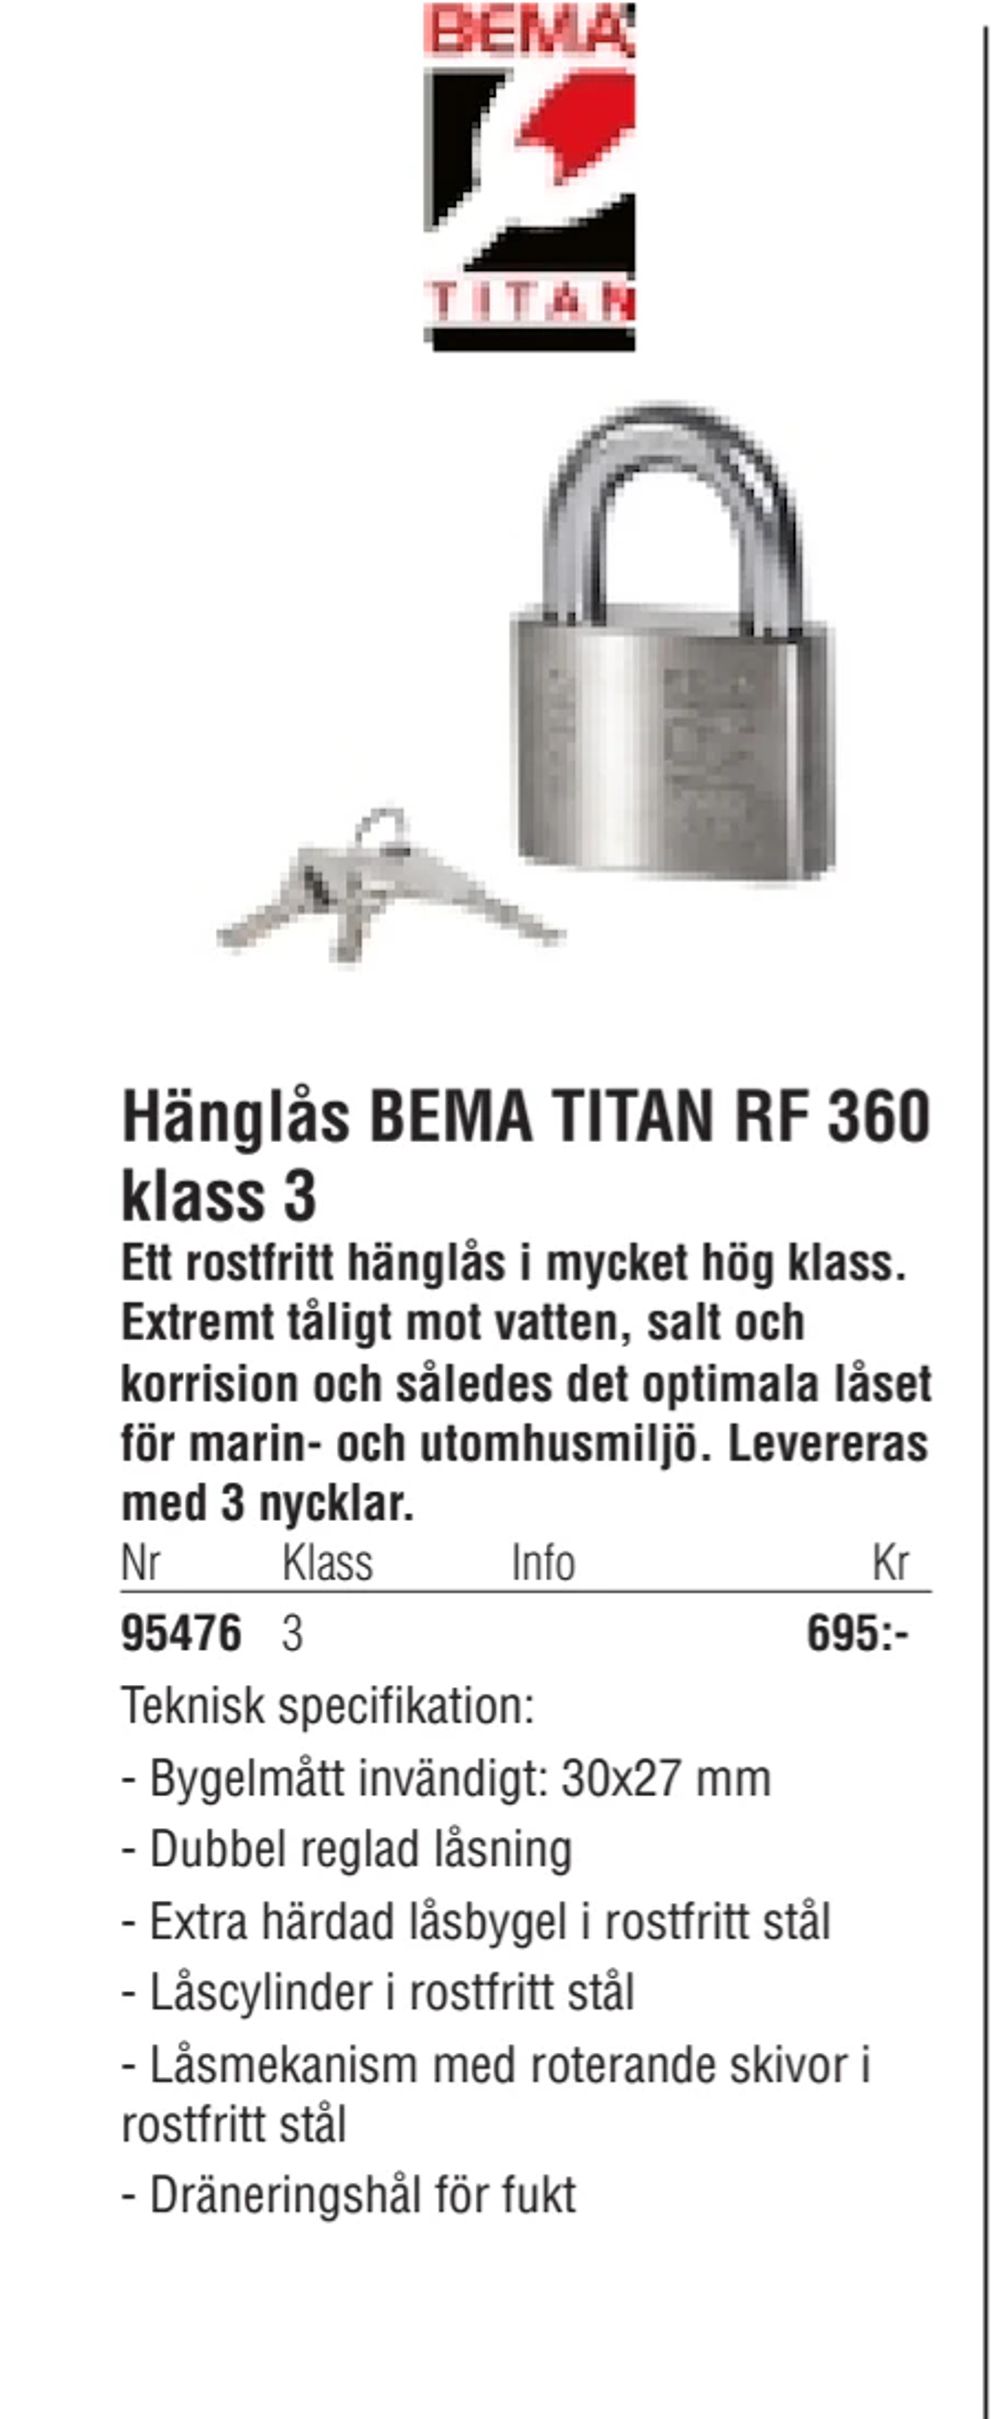 Erbjudanden på Hänglås BEMA TITAN RF 360 klass 3 från Erlandsons Brygga för 695 kr